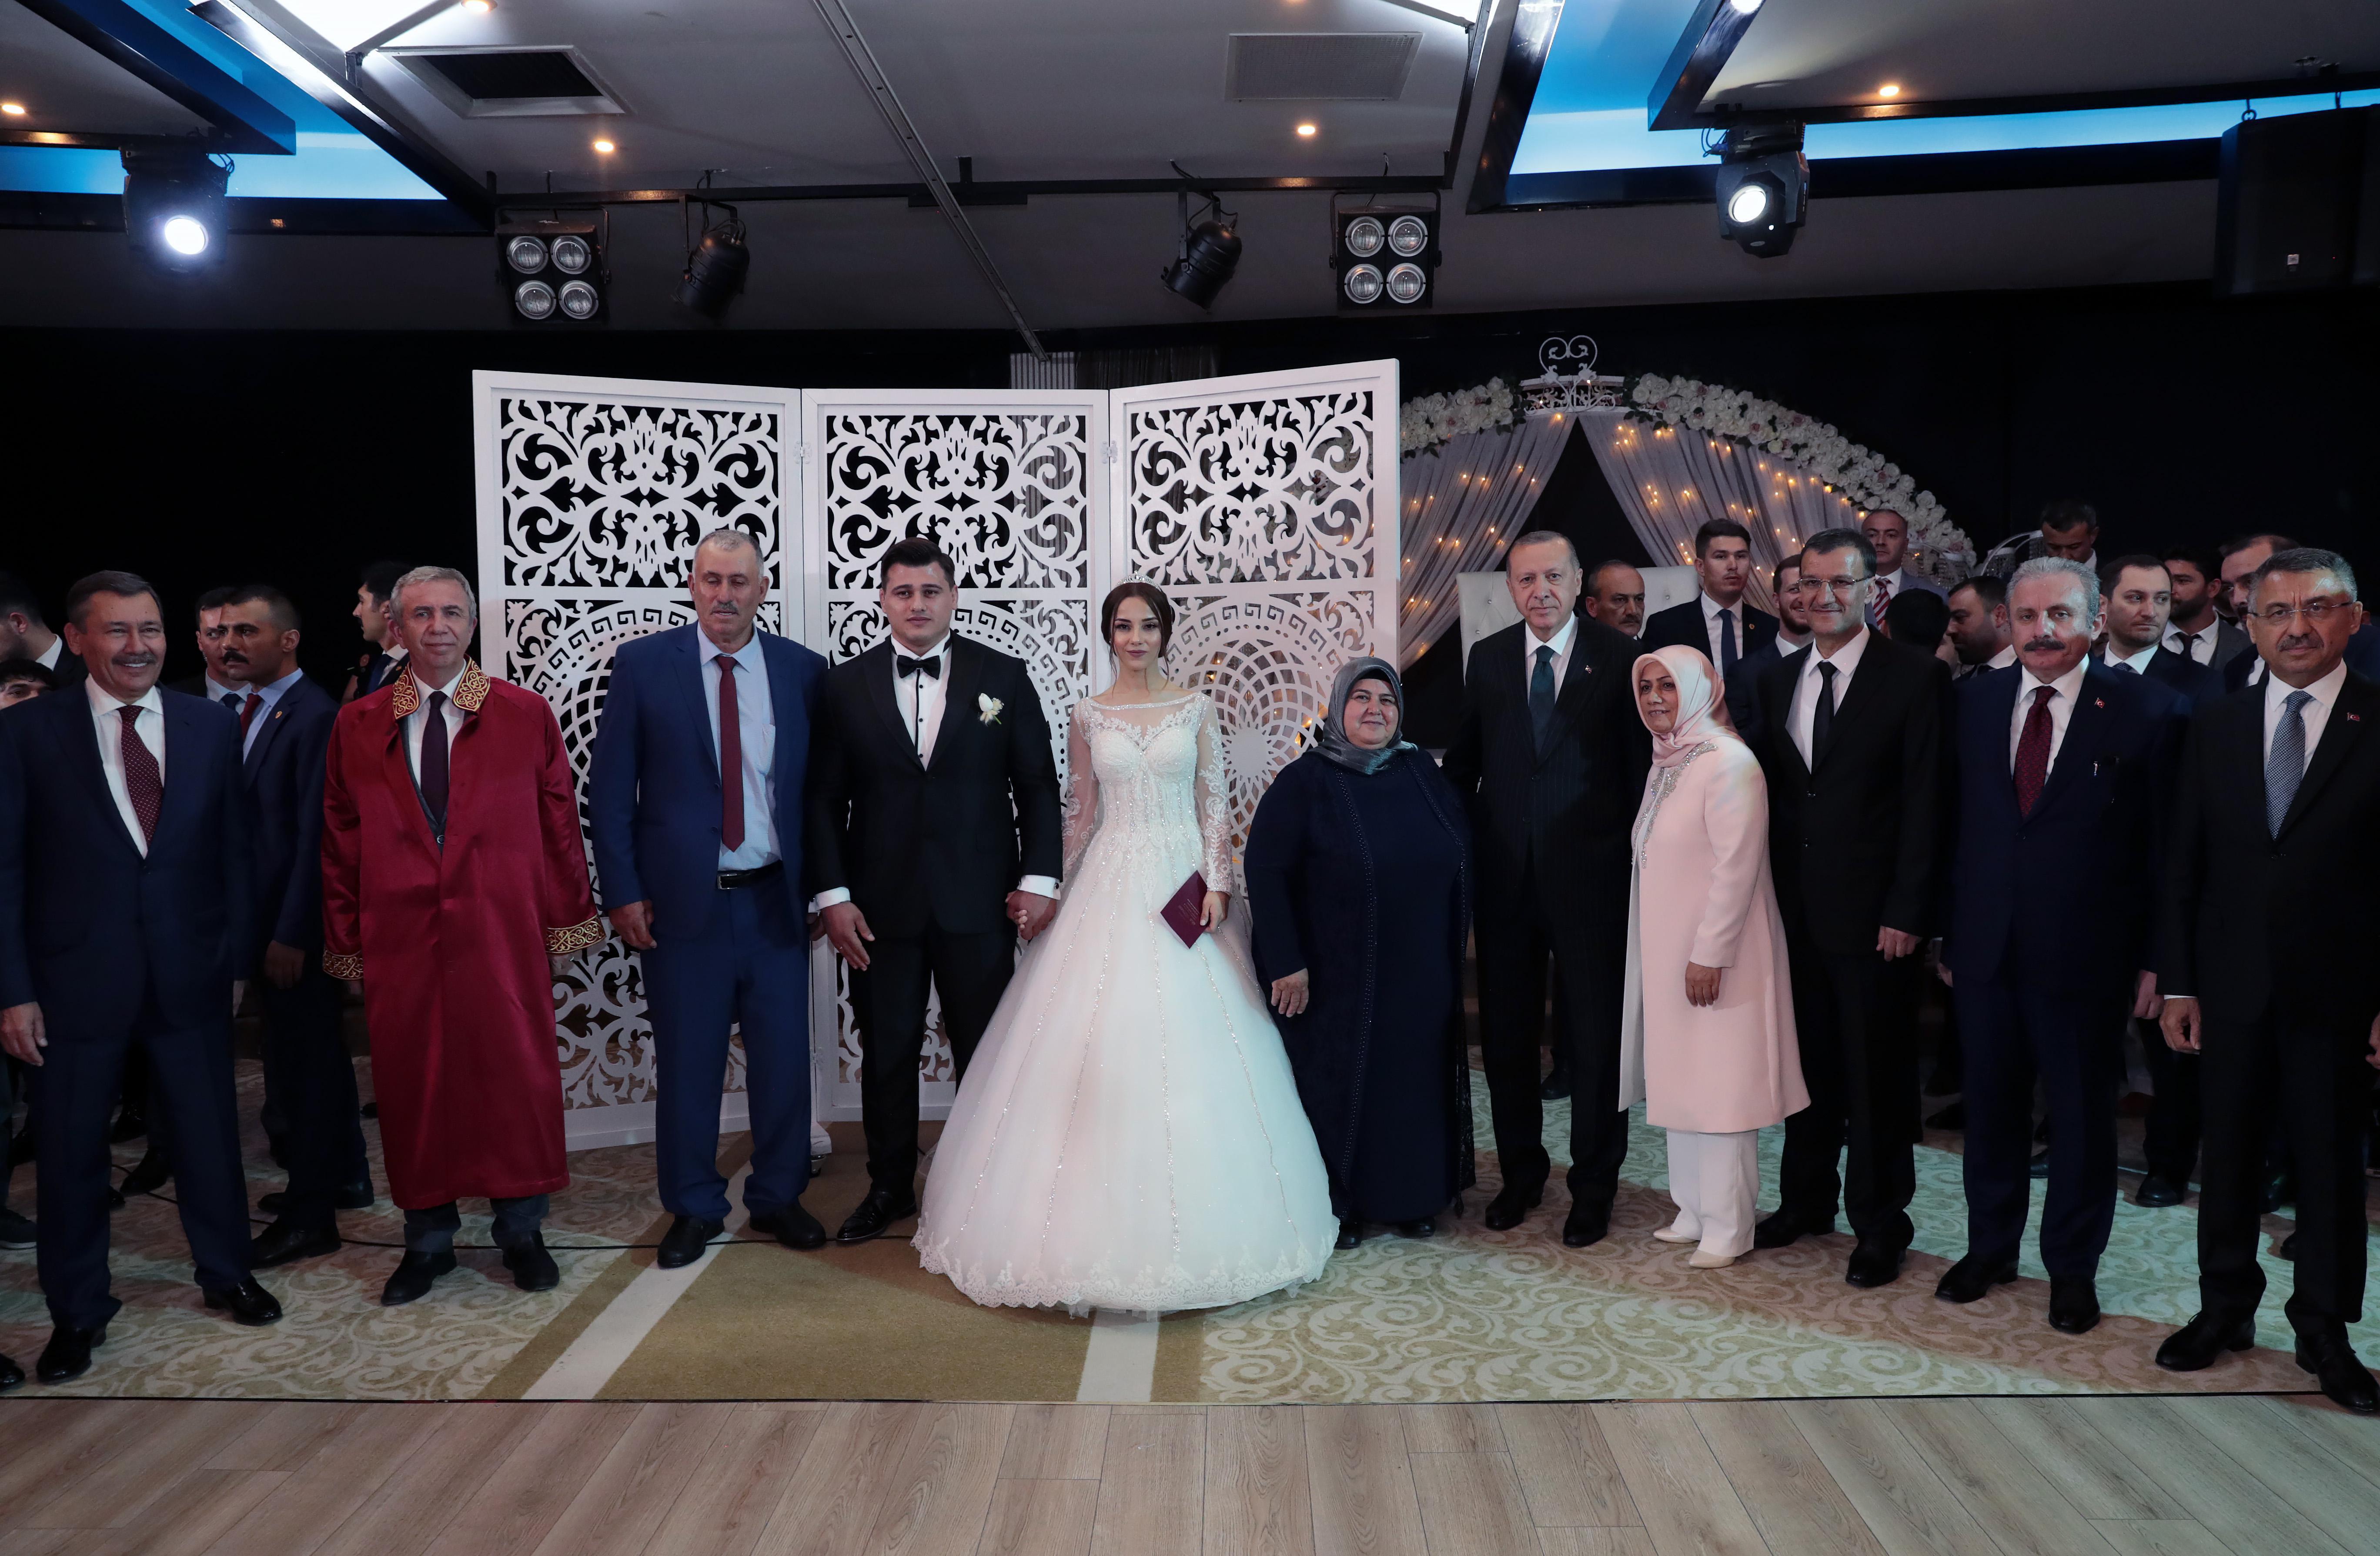 Cumhurbaşkanı Erdoğan, Rıza Kayaalpin nikah şahidi oldu